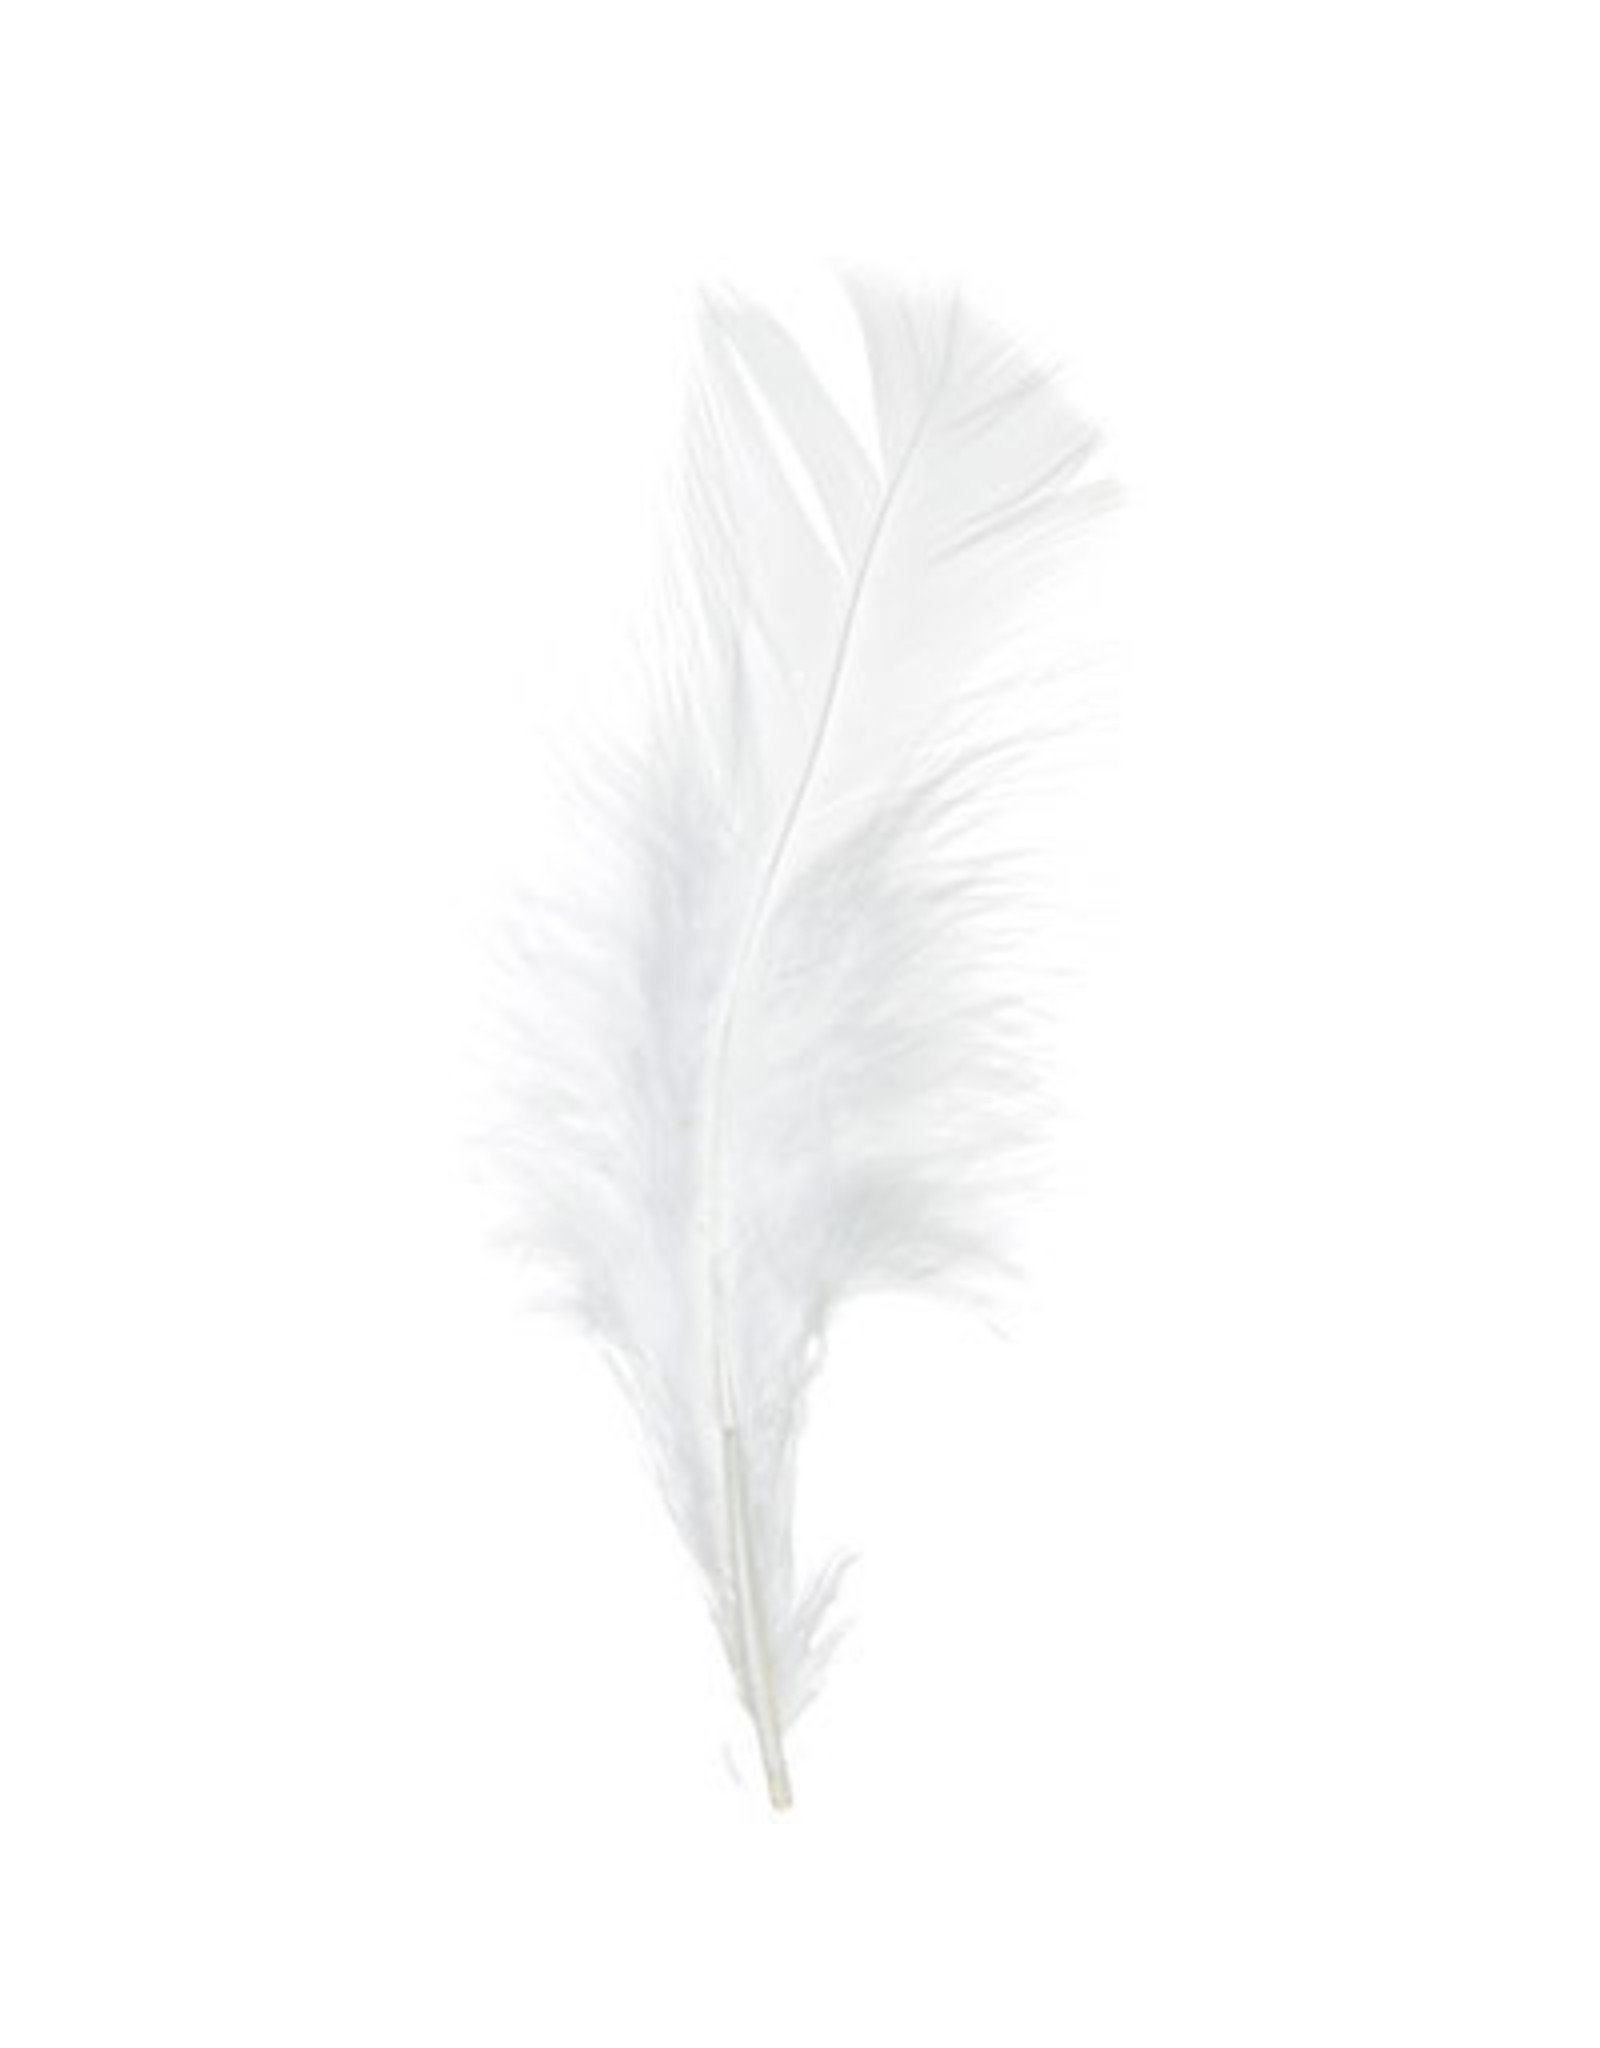 Marabou Feathers White 6g